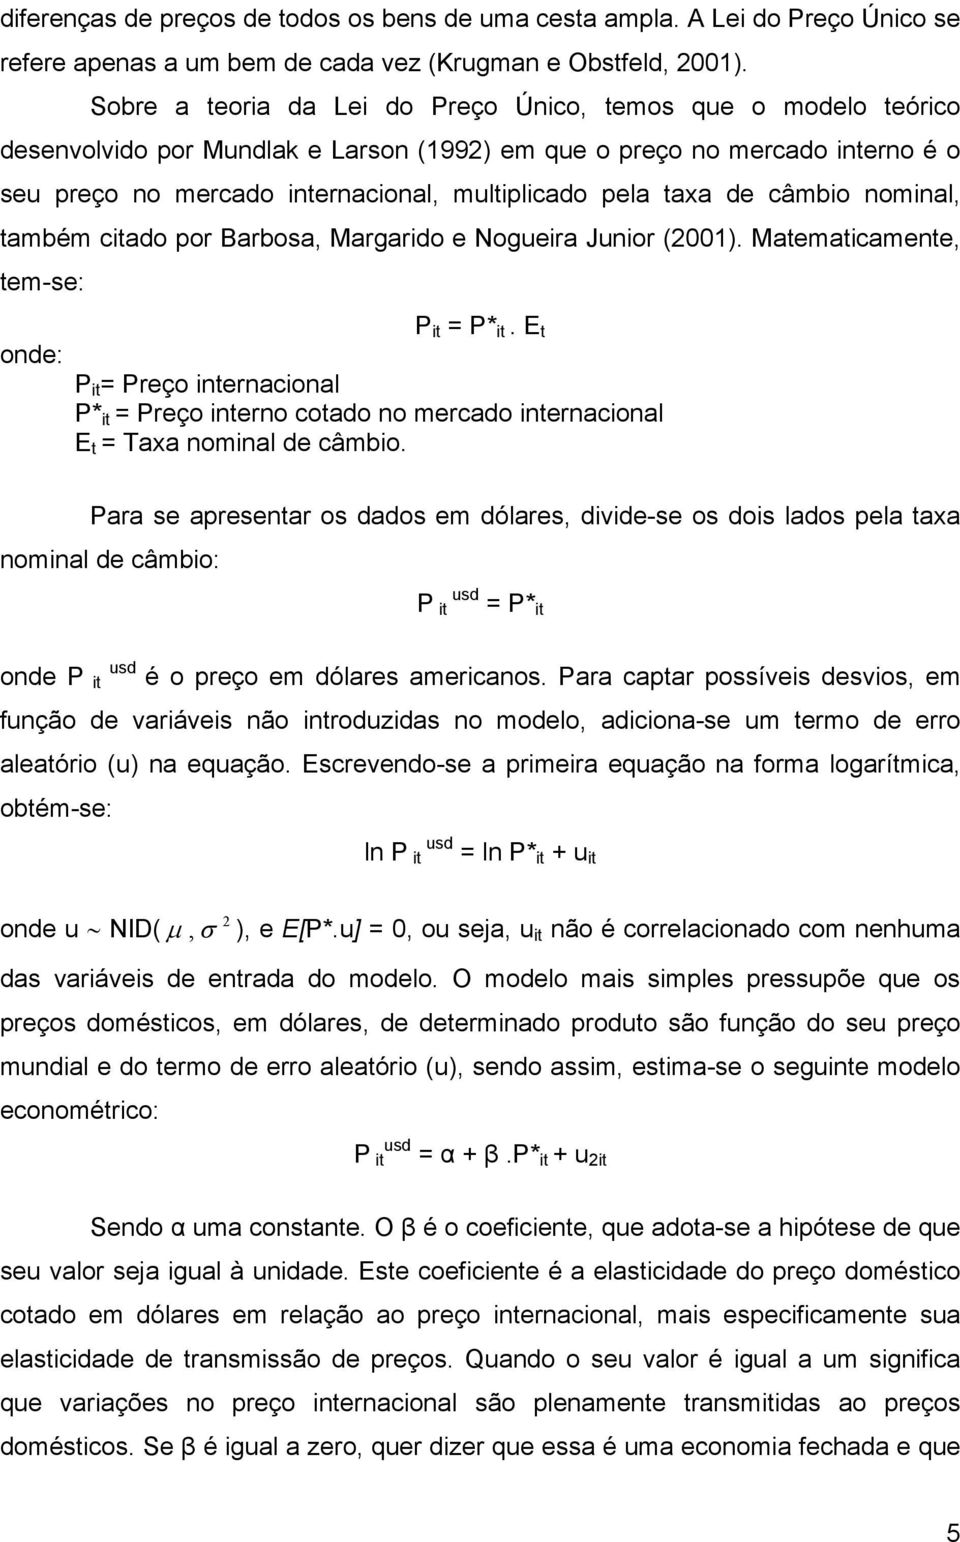 taxa de câmbio nominal, também citado por Barbosa, Margarido e Nogueira Junior (2001). Matematicamente, tem-se: P it = P* it.